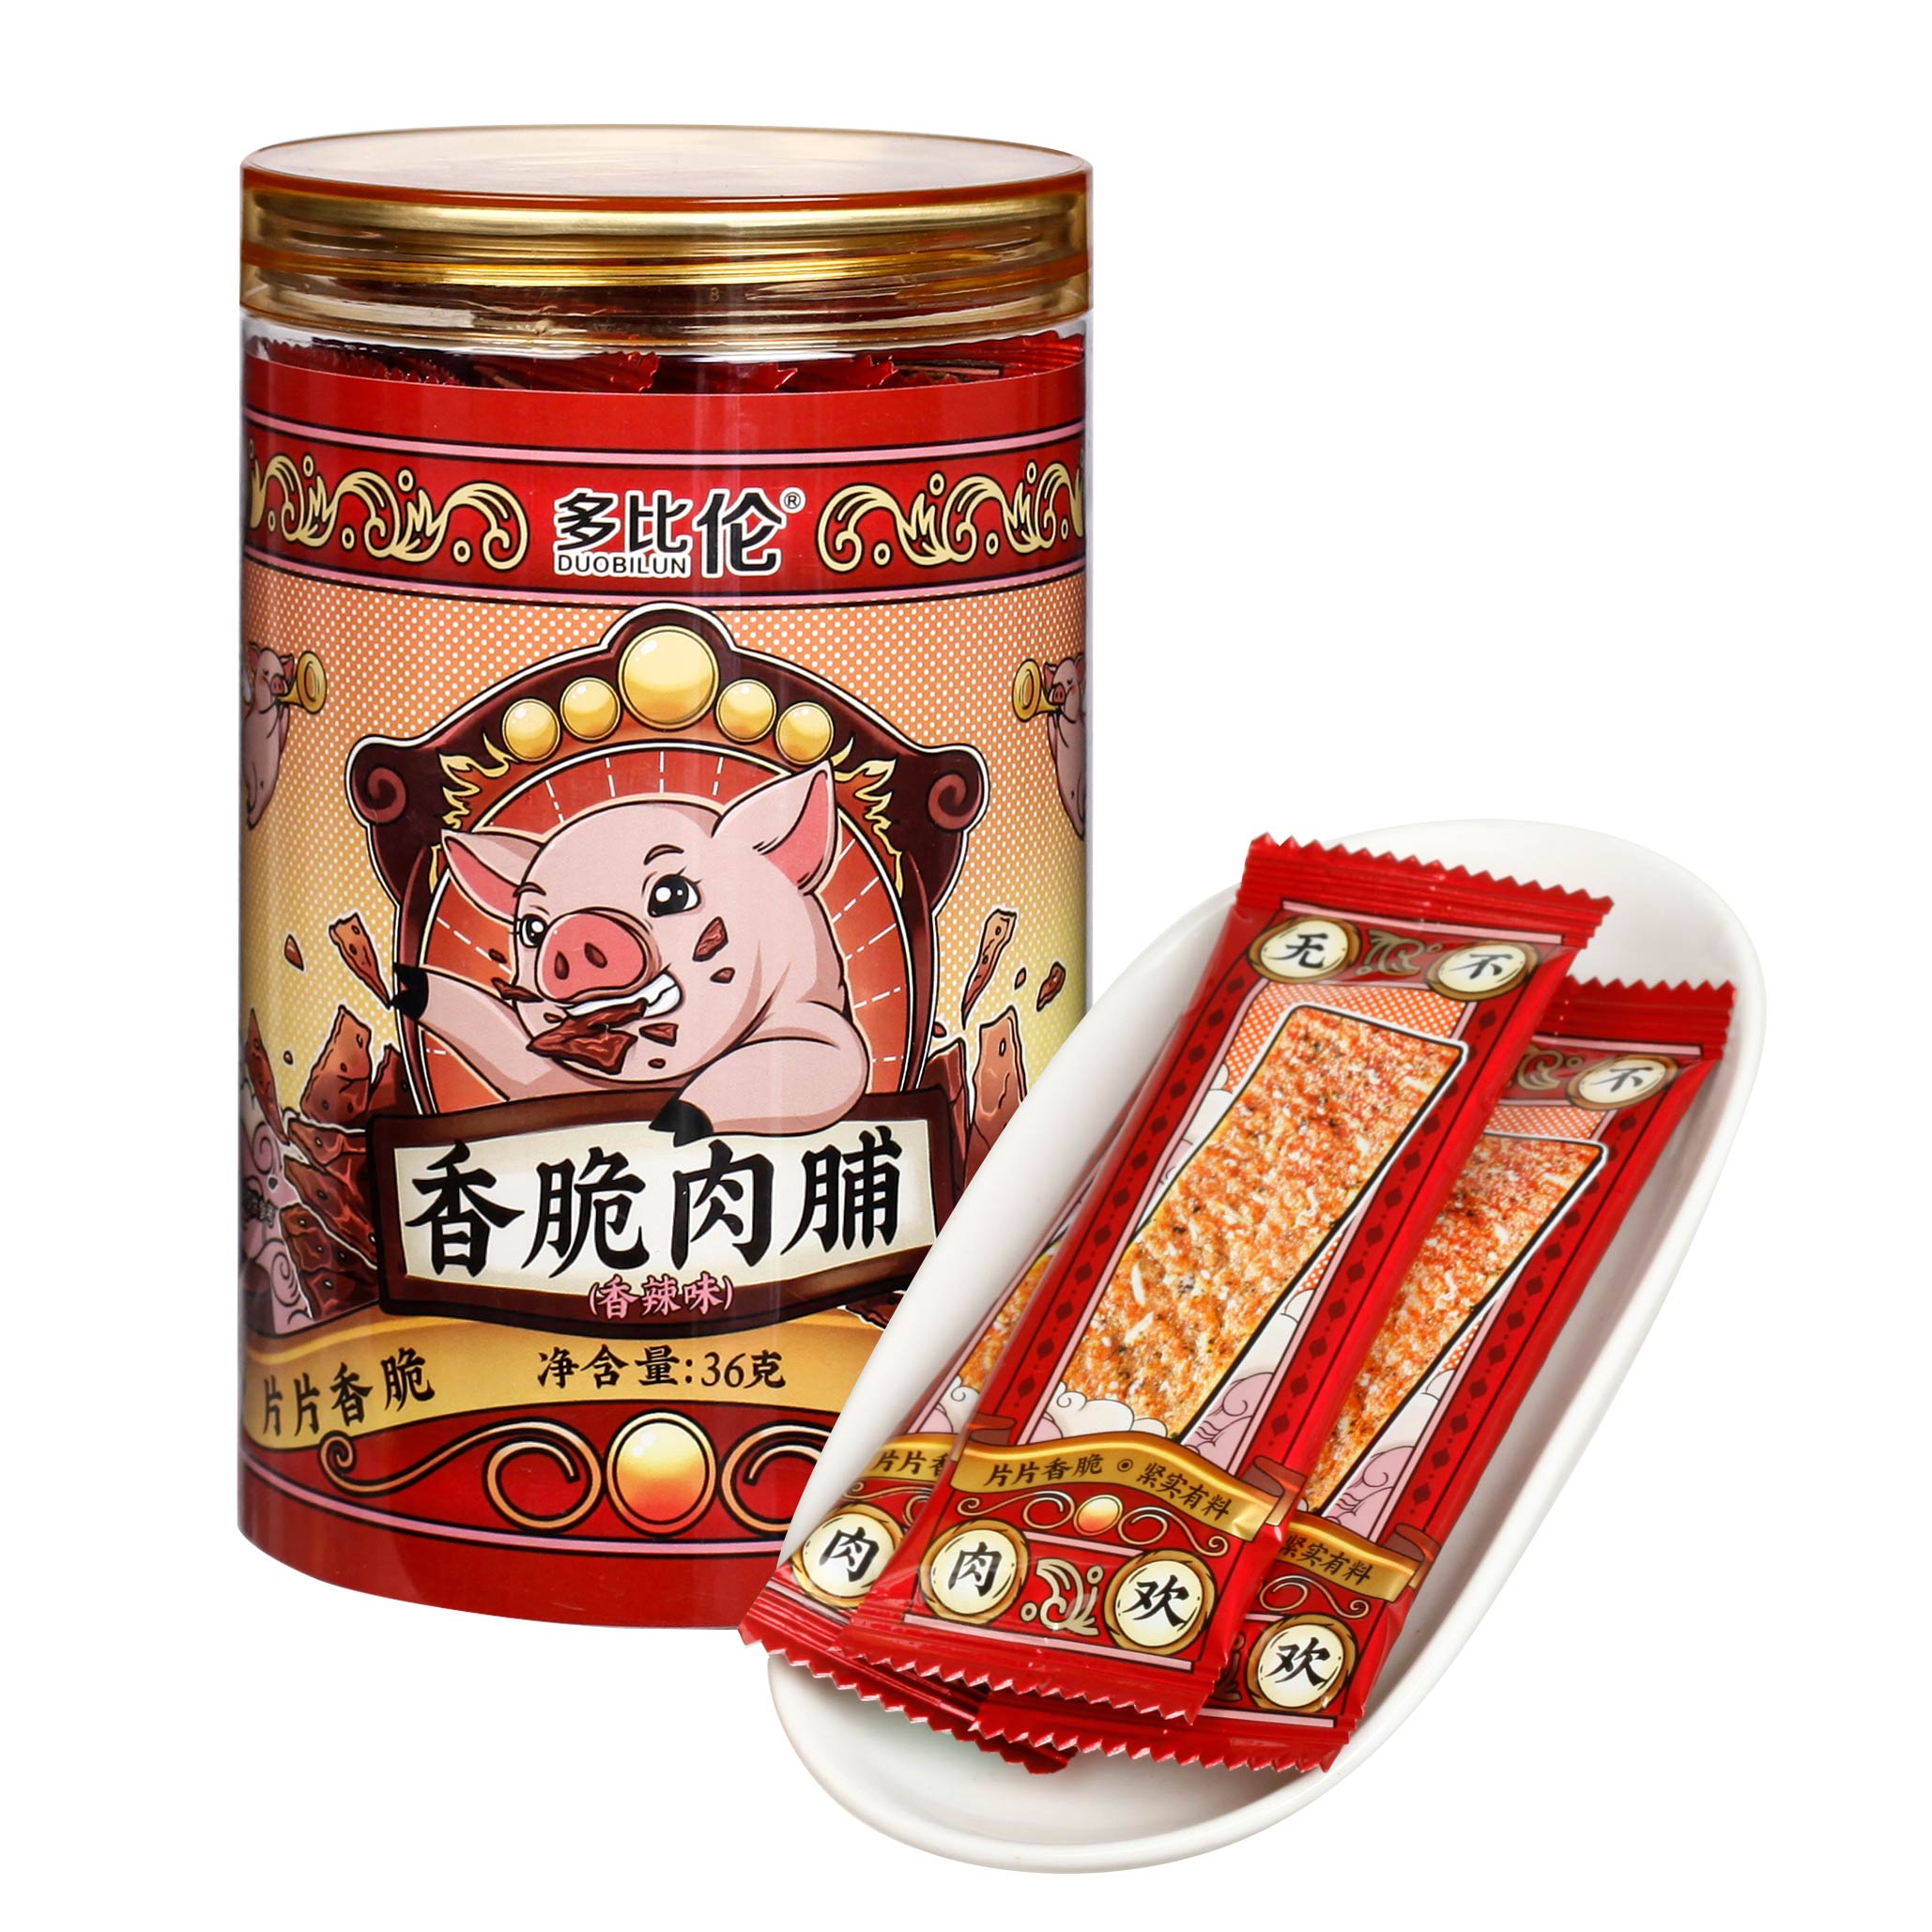 闽之未香脆肉脯36g台湾风味薄脆果仁肉纸猪肉脯干罐装儿童零食品-图3